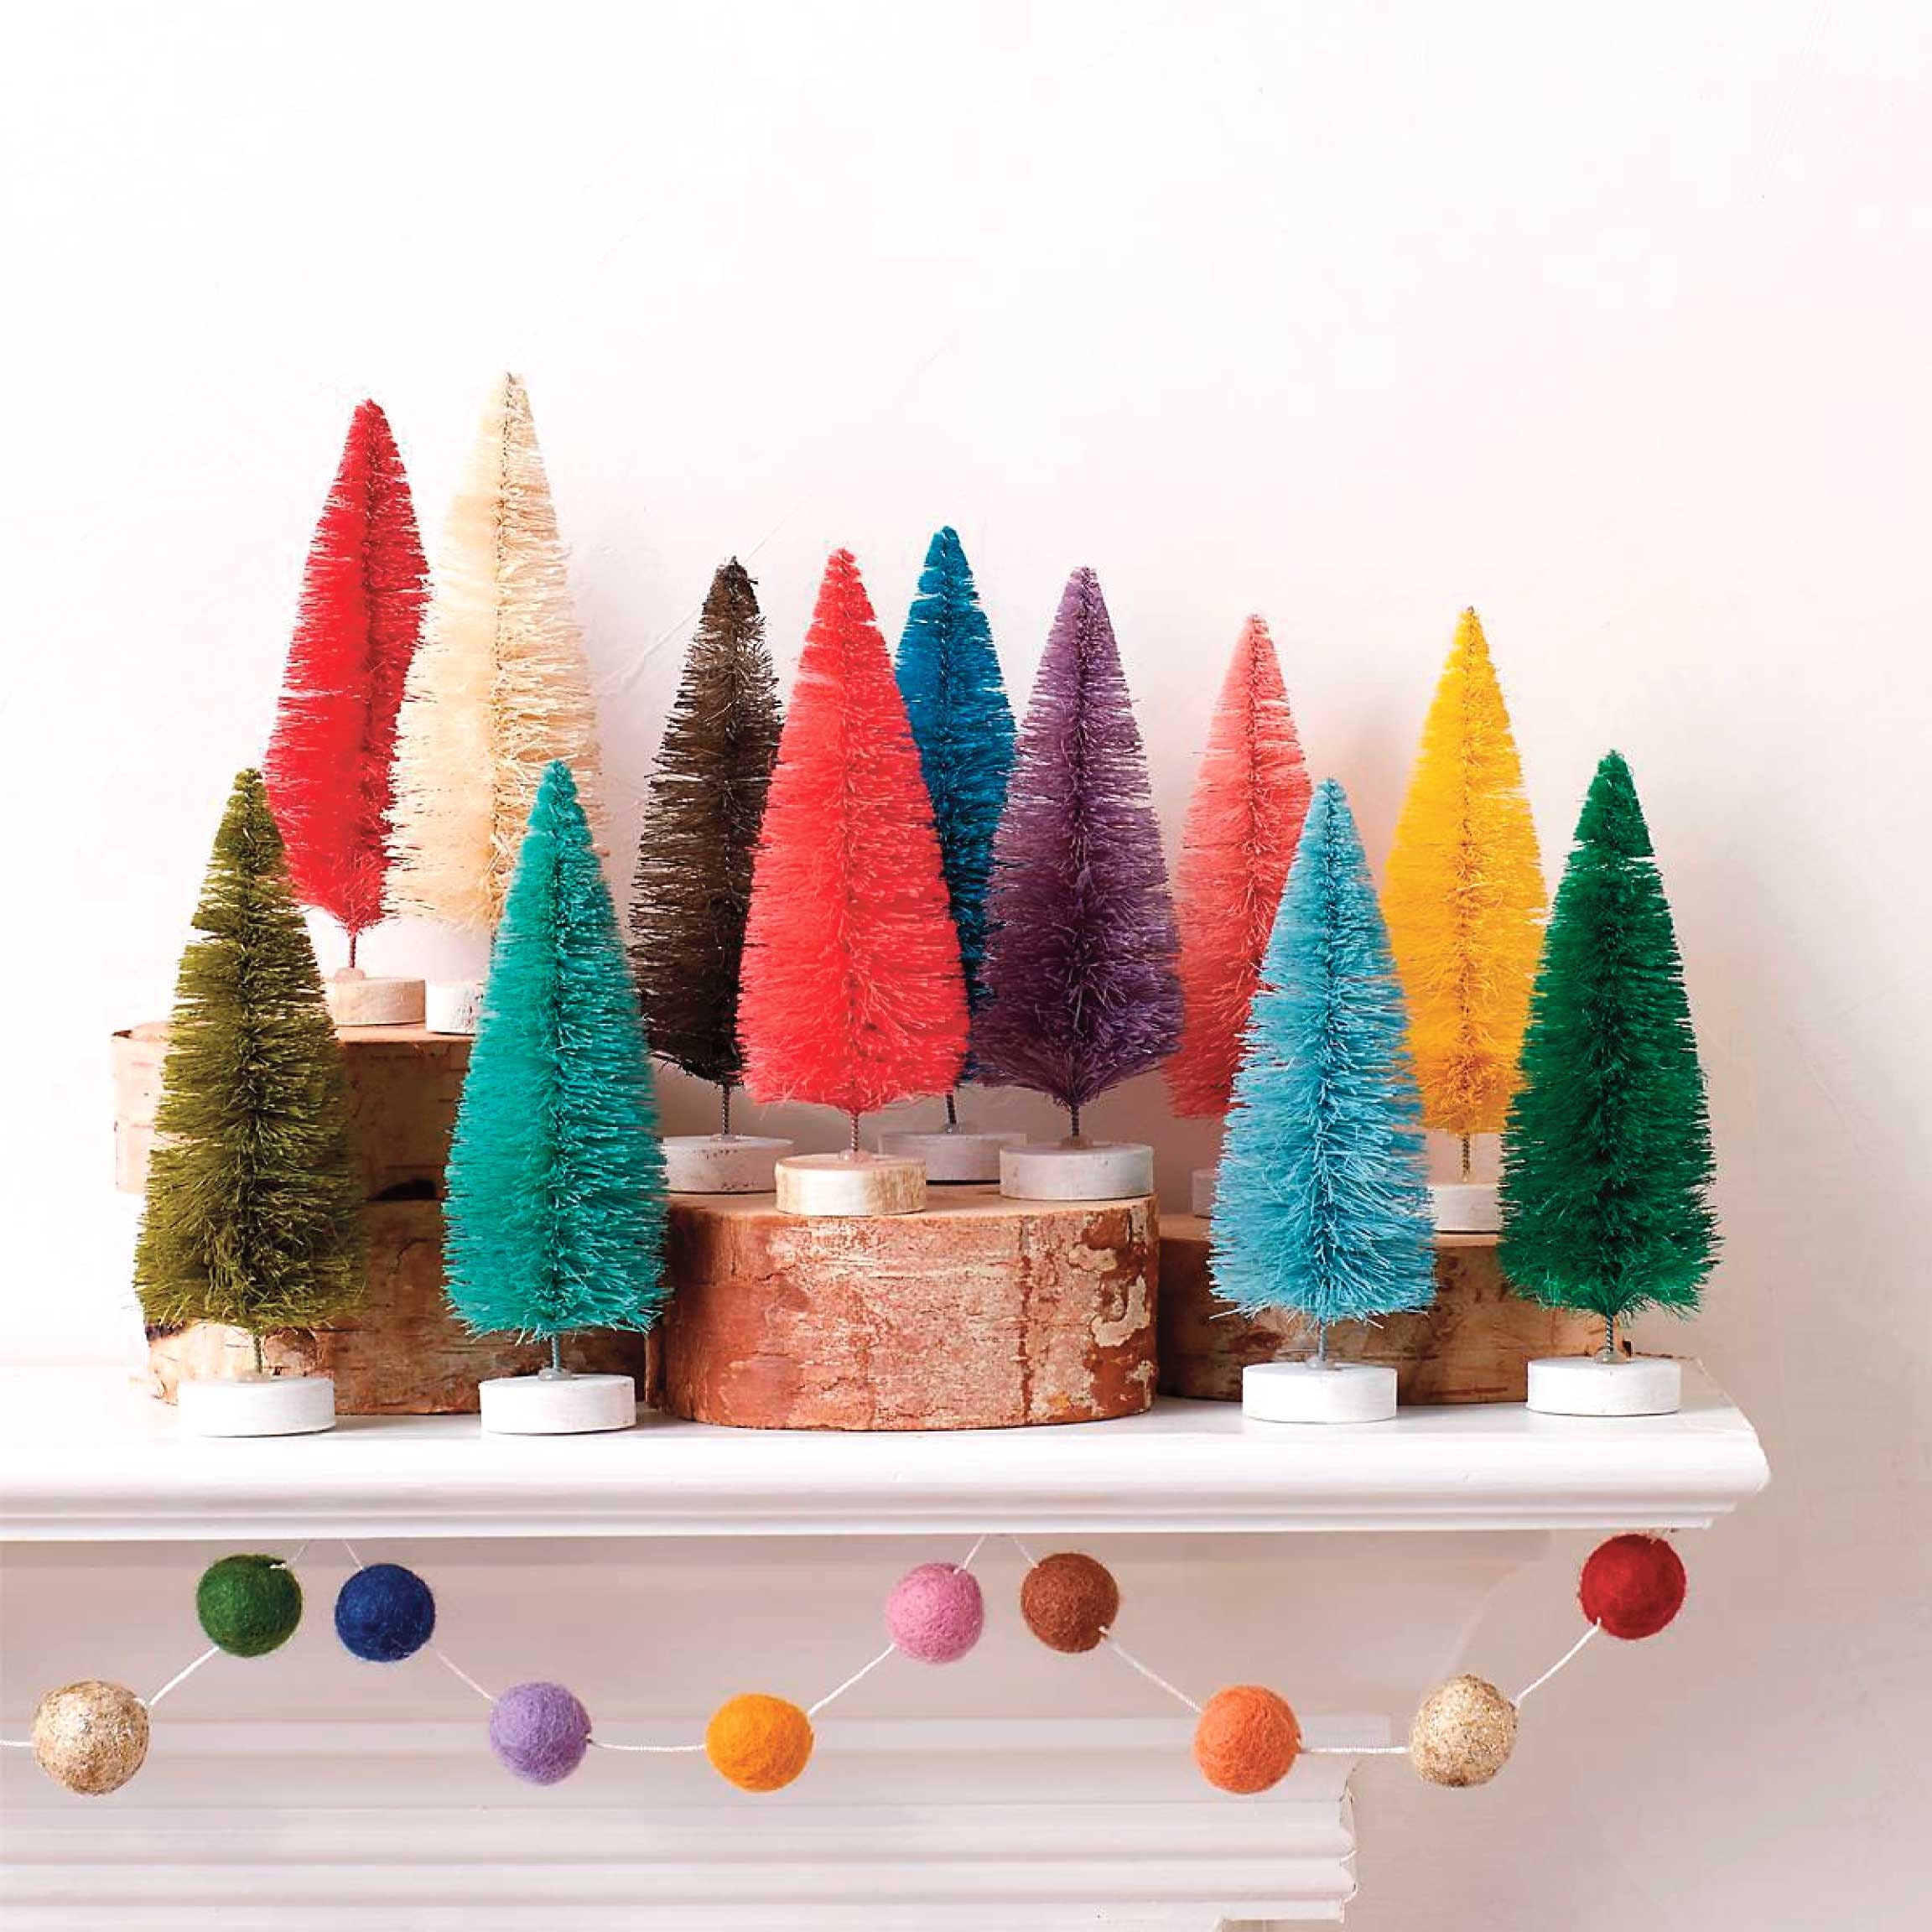 Bottlebrush Tree Decorating Ideas - Christmas Bottlebrush Trees